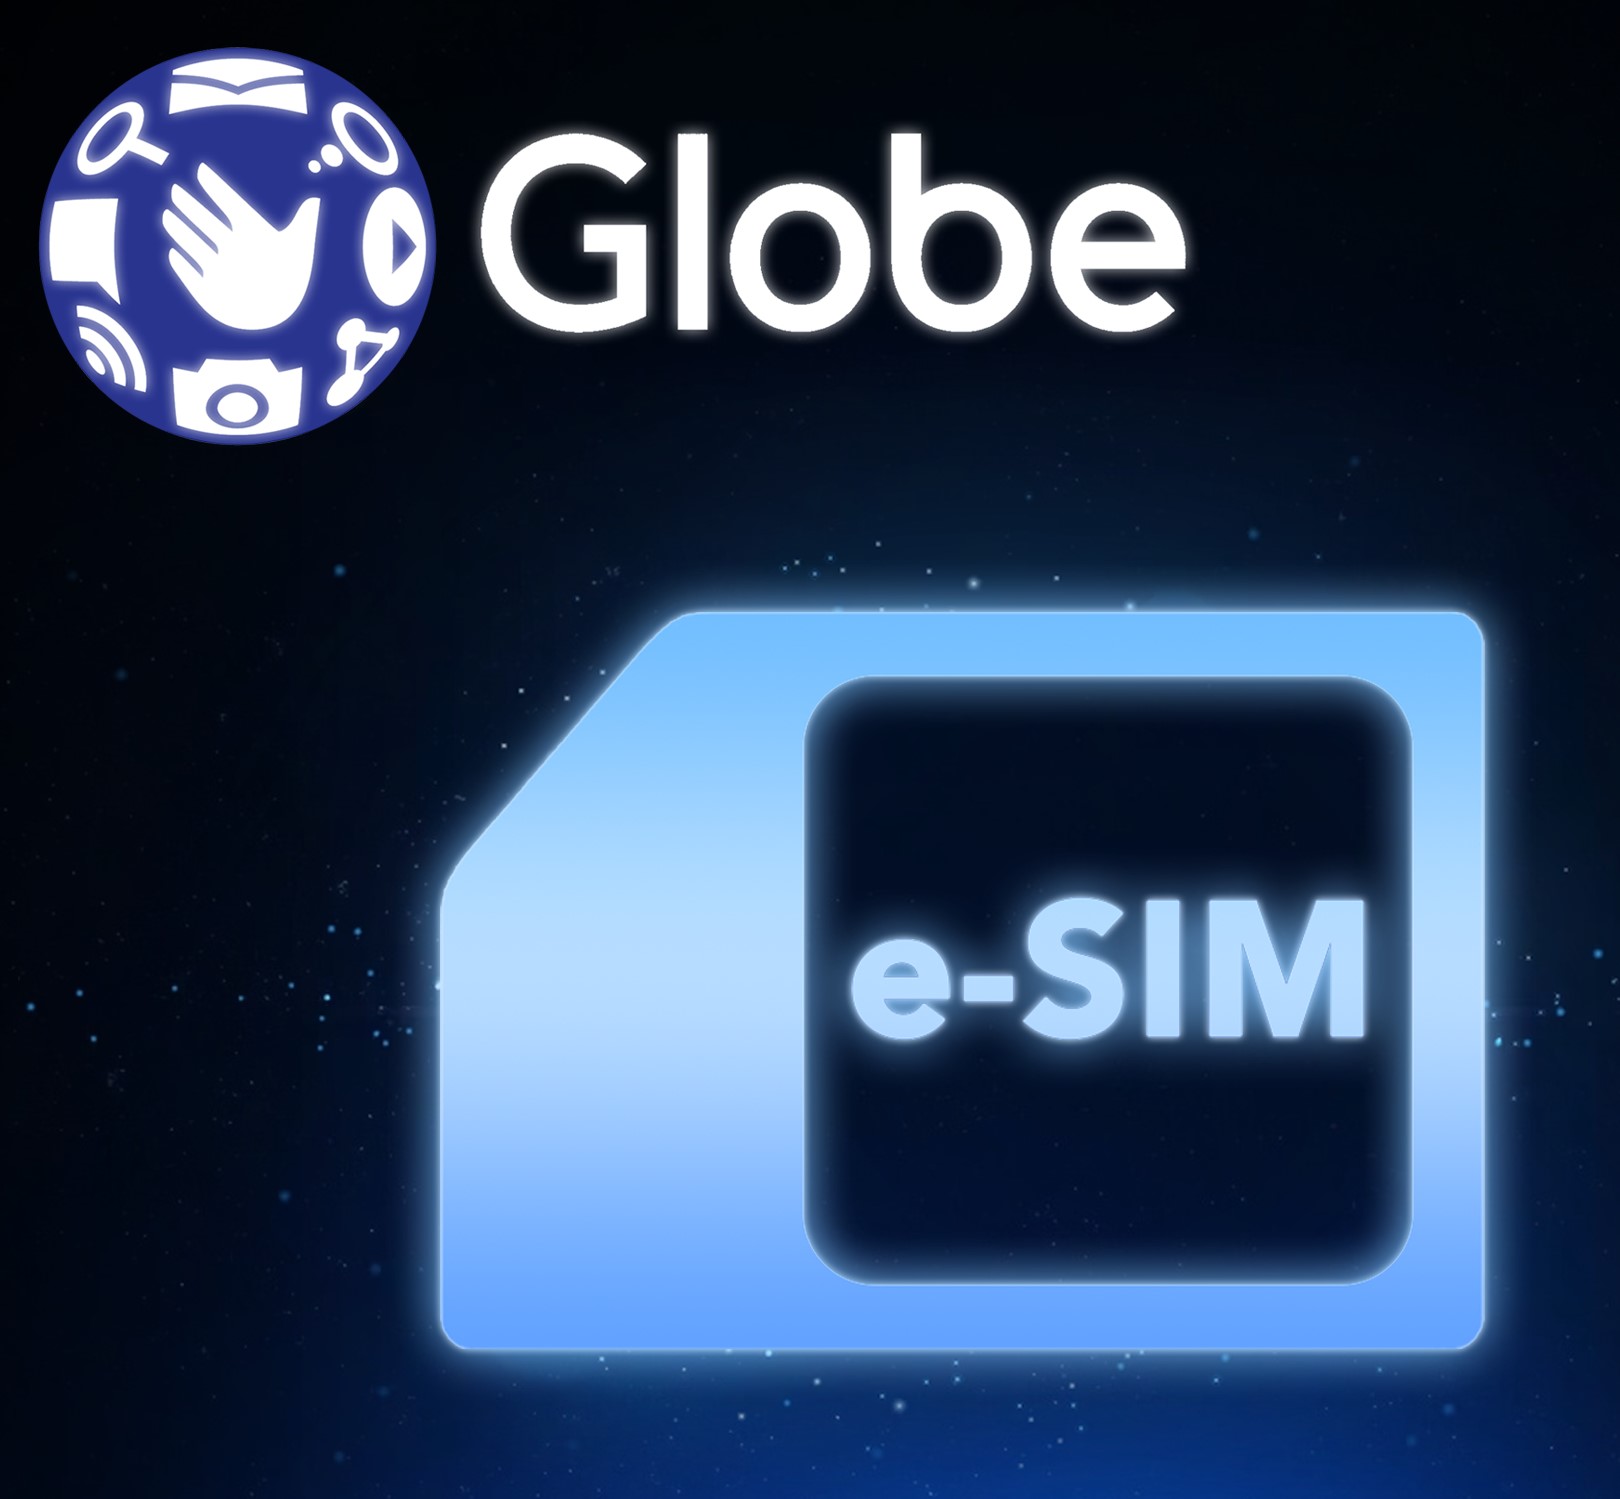 菲律宾esim-globe